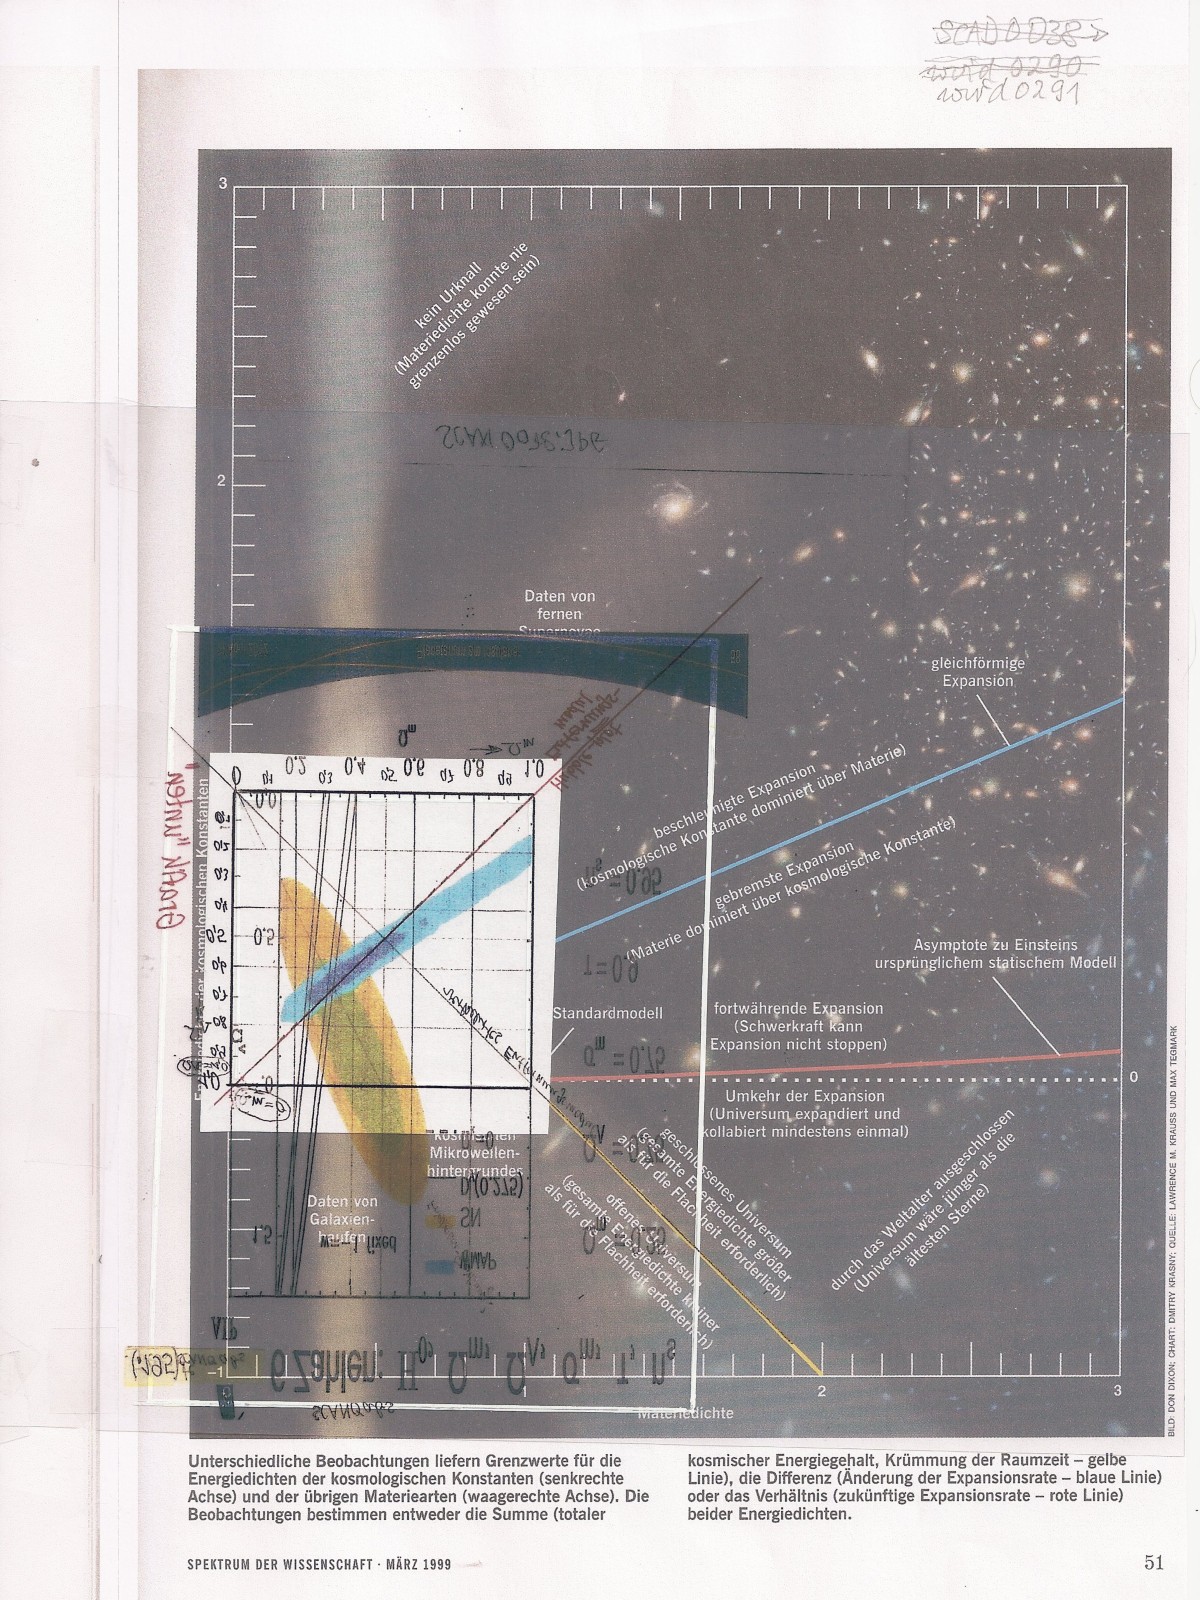 KosmoSchaubild-Grafik mit Hubble-Diagramm